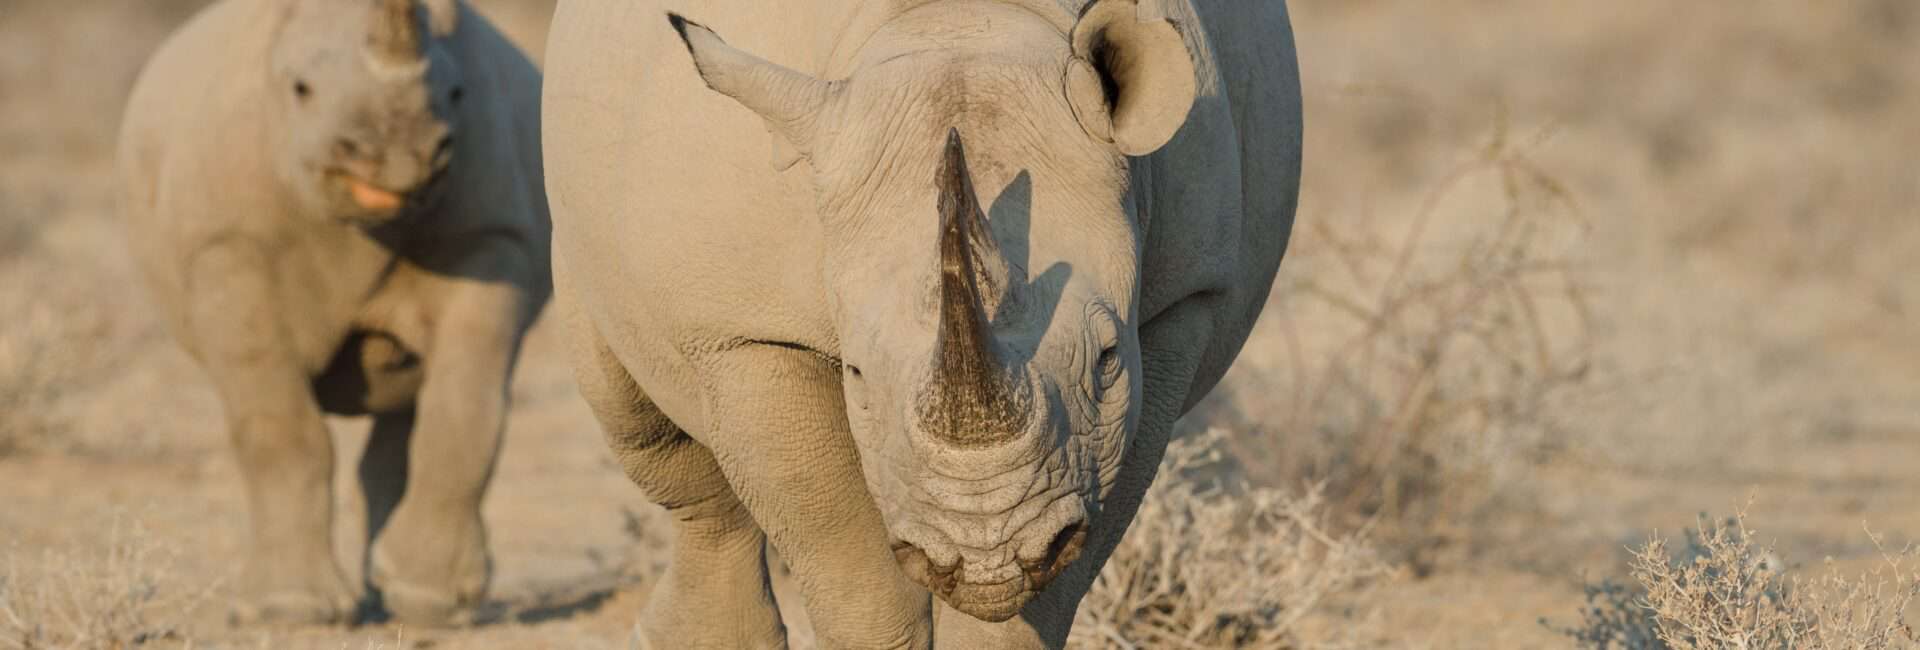 Etosha Heights - Black Rhino